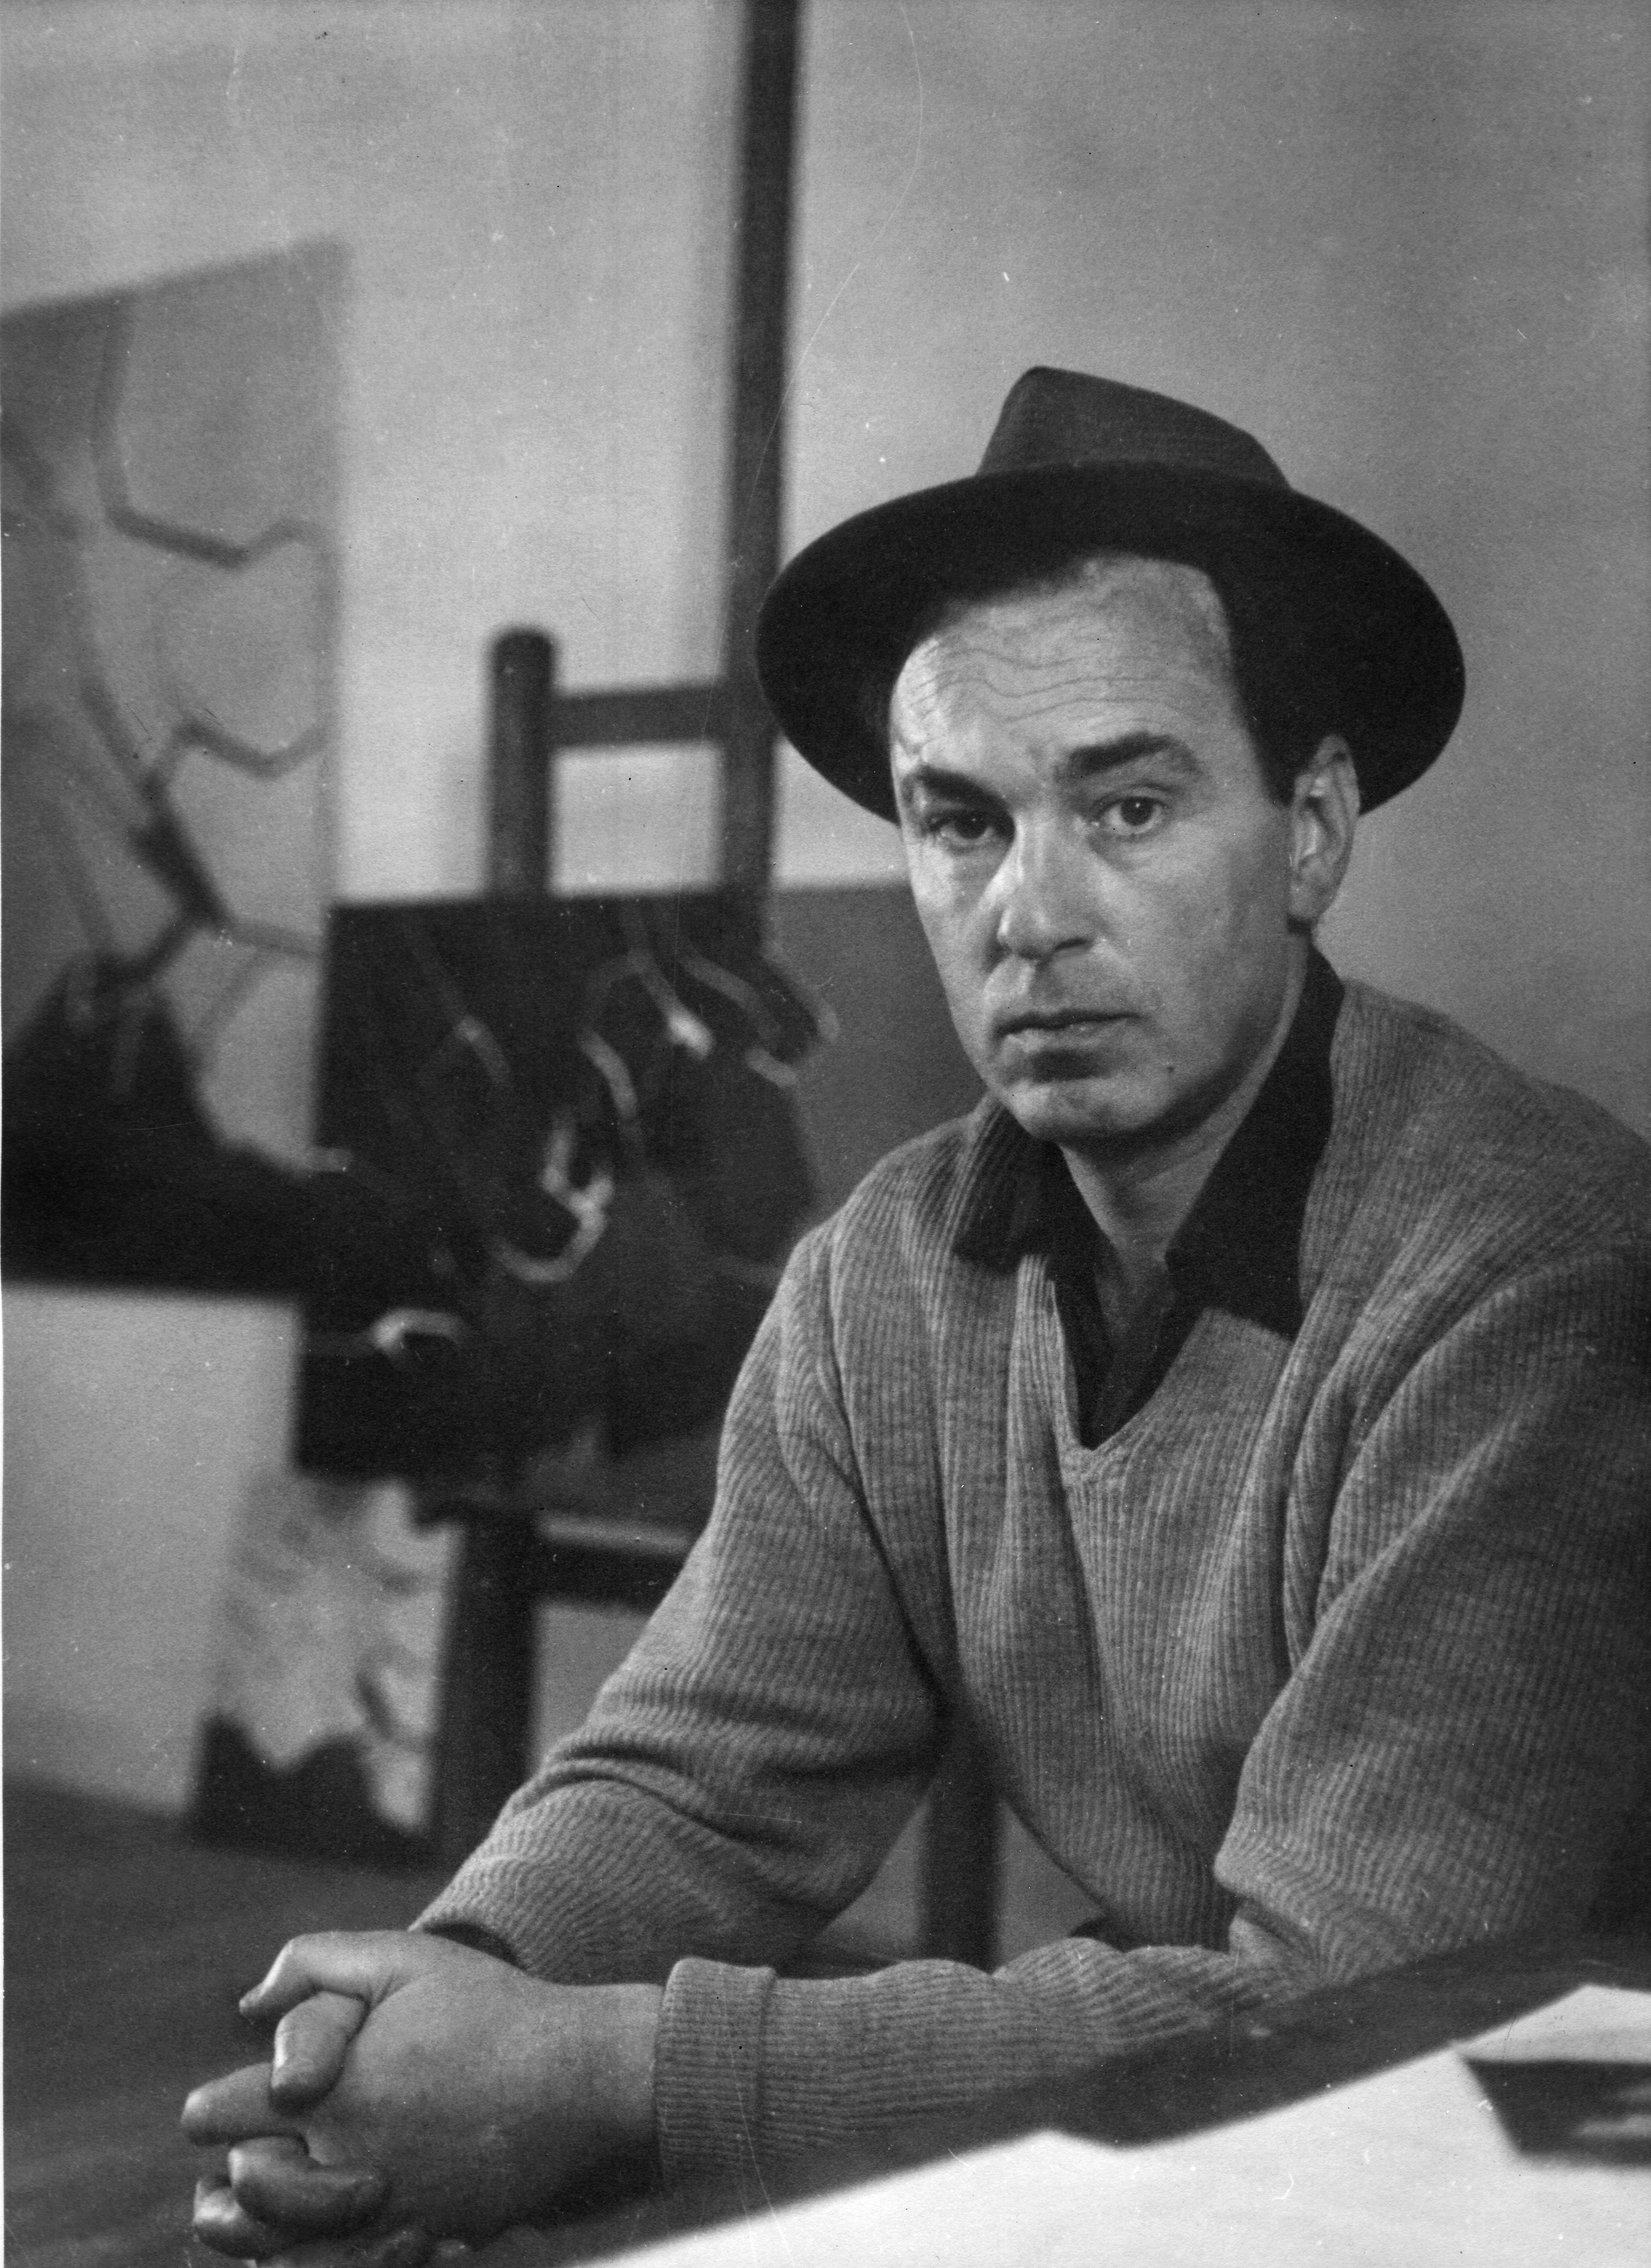 Pablo Palazuelo junto a los óleos Accord Noir (1958) e Imagination du Temps I (1958). Galapagar, c. 1958. Fotografía: Enrique Palazuelo. © Fundación Pablo Palazuelo